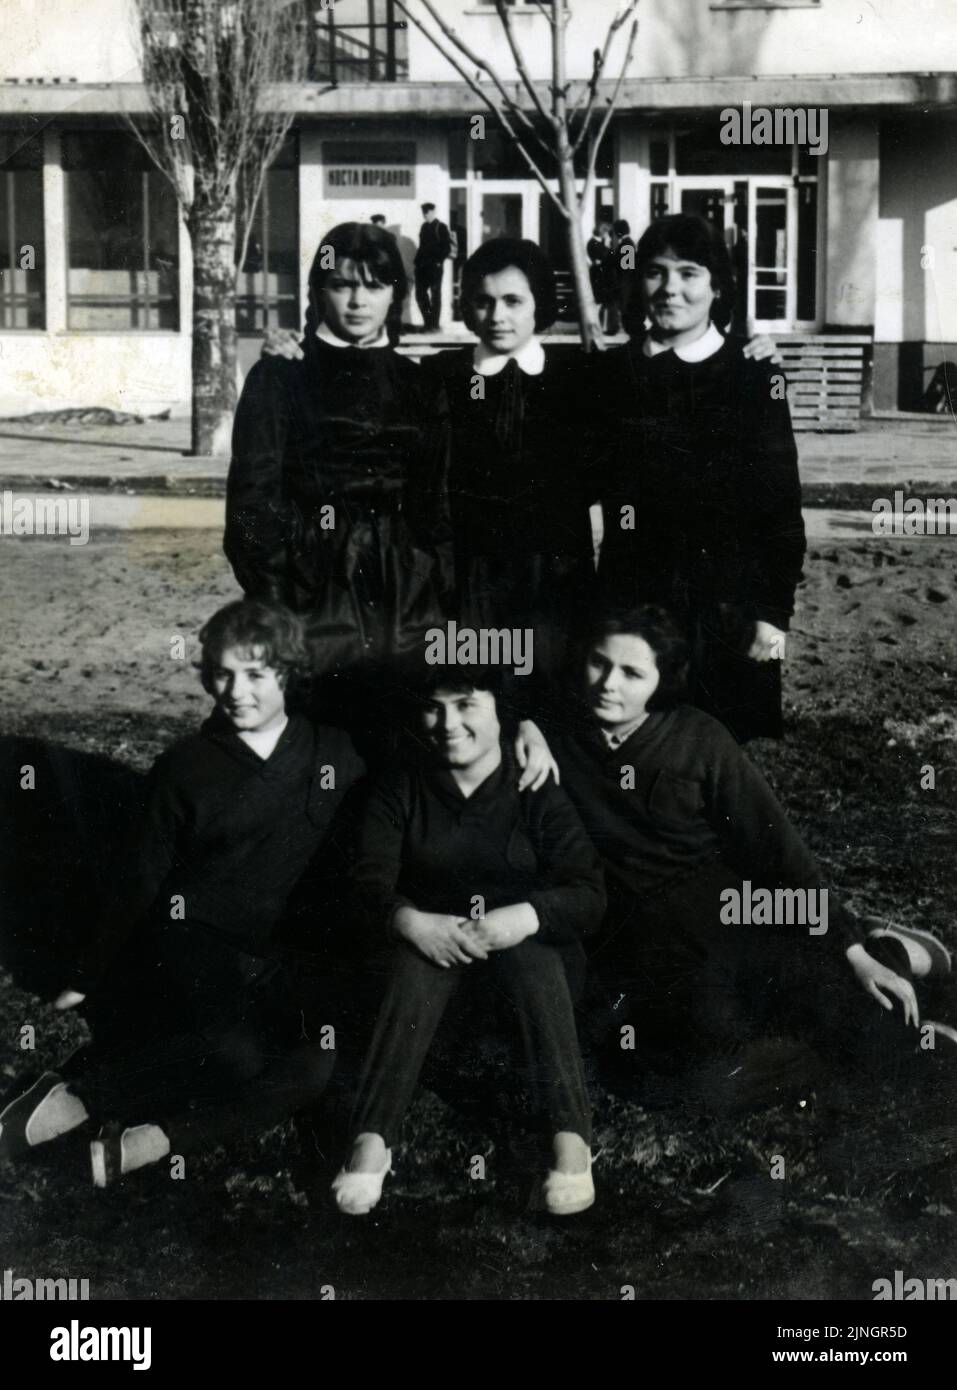 Porträt von Freundinnen Schülerinnen in schwarzen Schuluniformen posieren für Foto außerhalb ihrer Schule in der 60s, Bulgarien Stockfoto